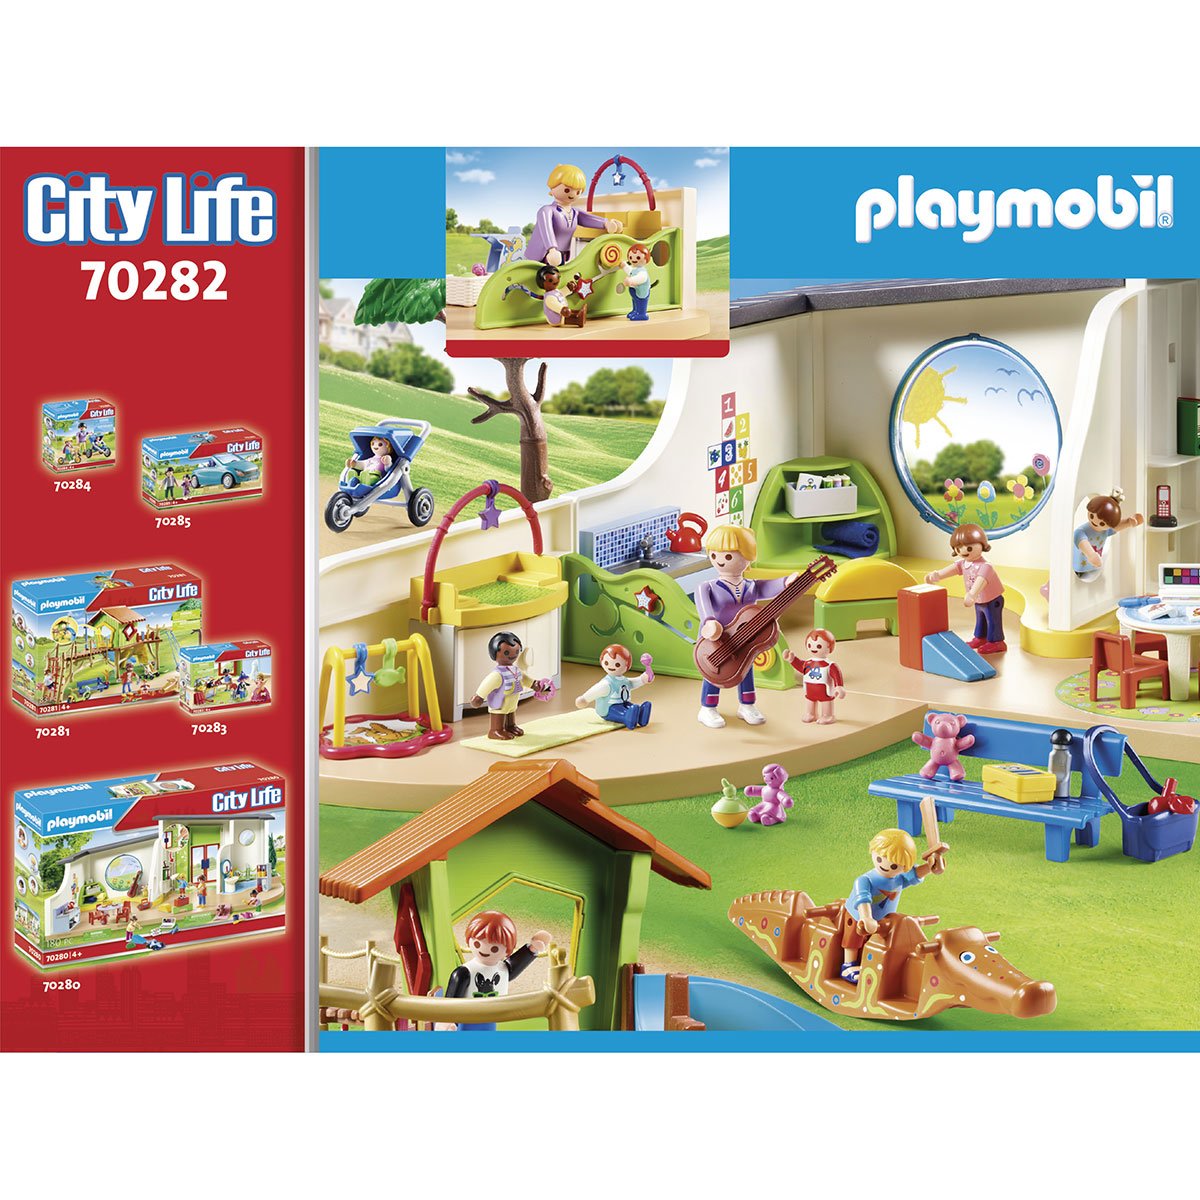 Espace Creche Pour Bebes Playmobil City Life 702 La Grande Recre